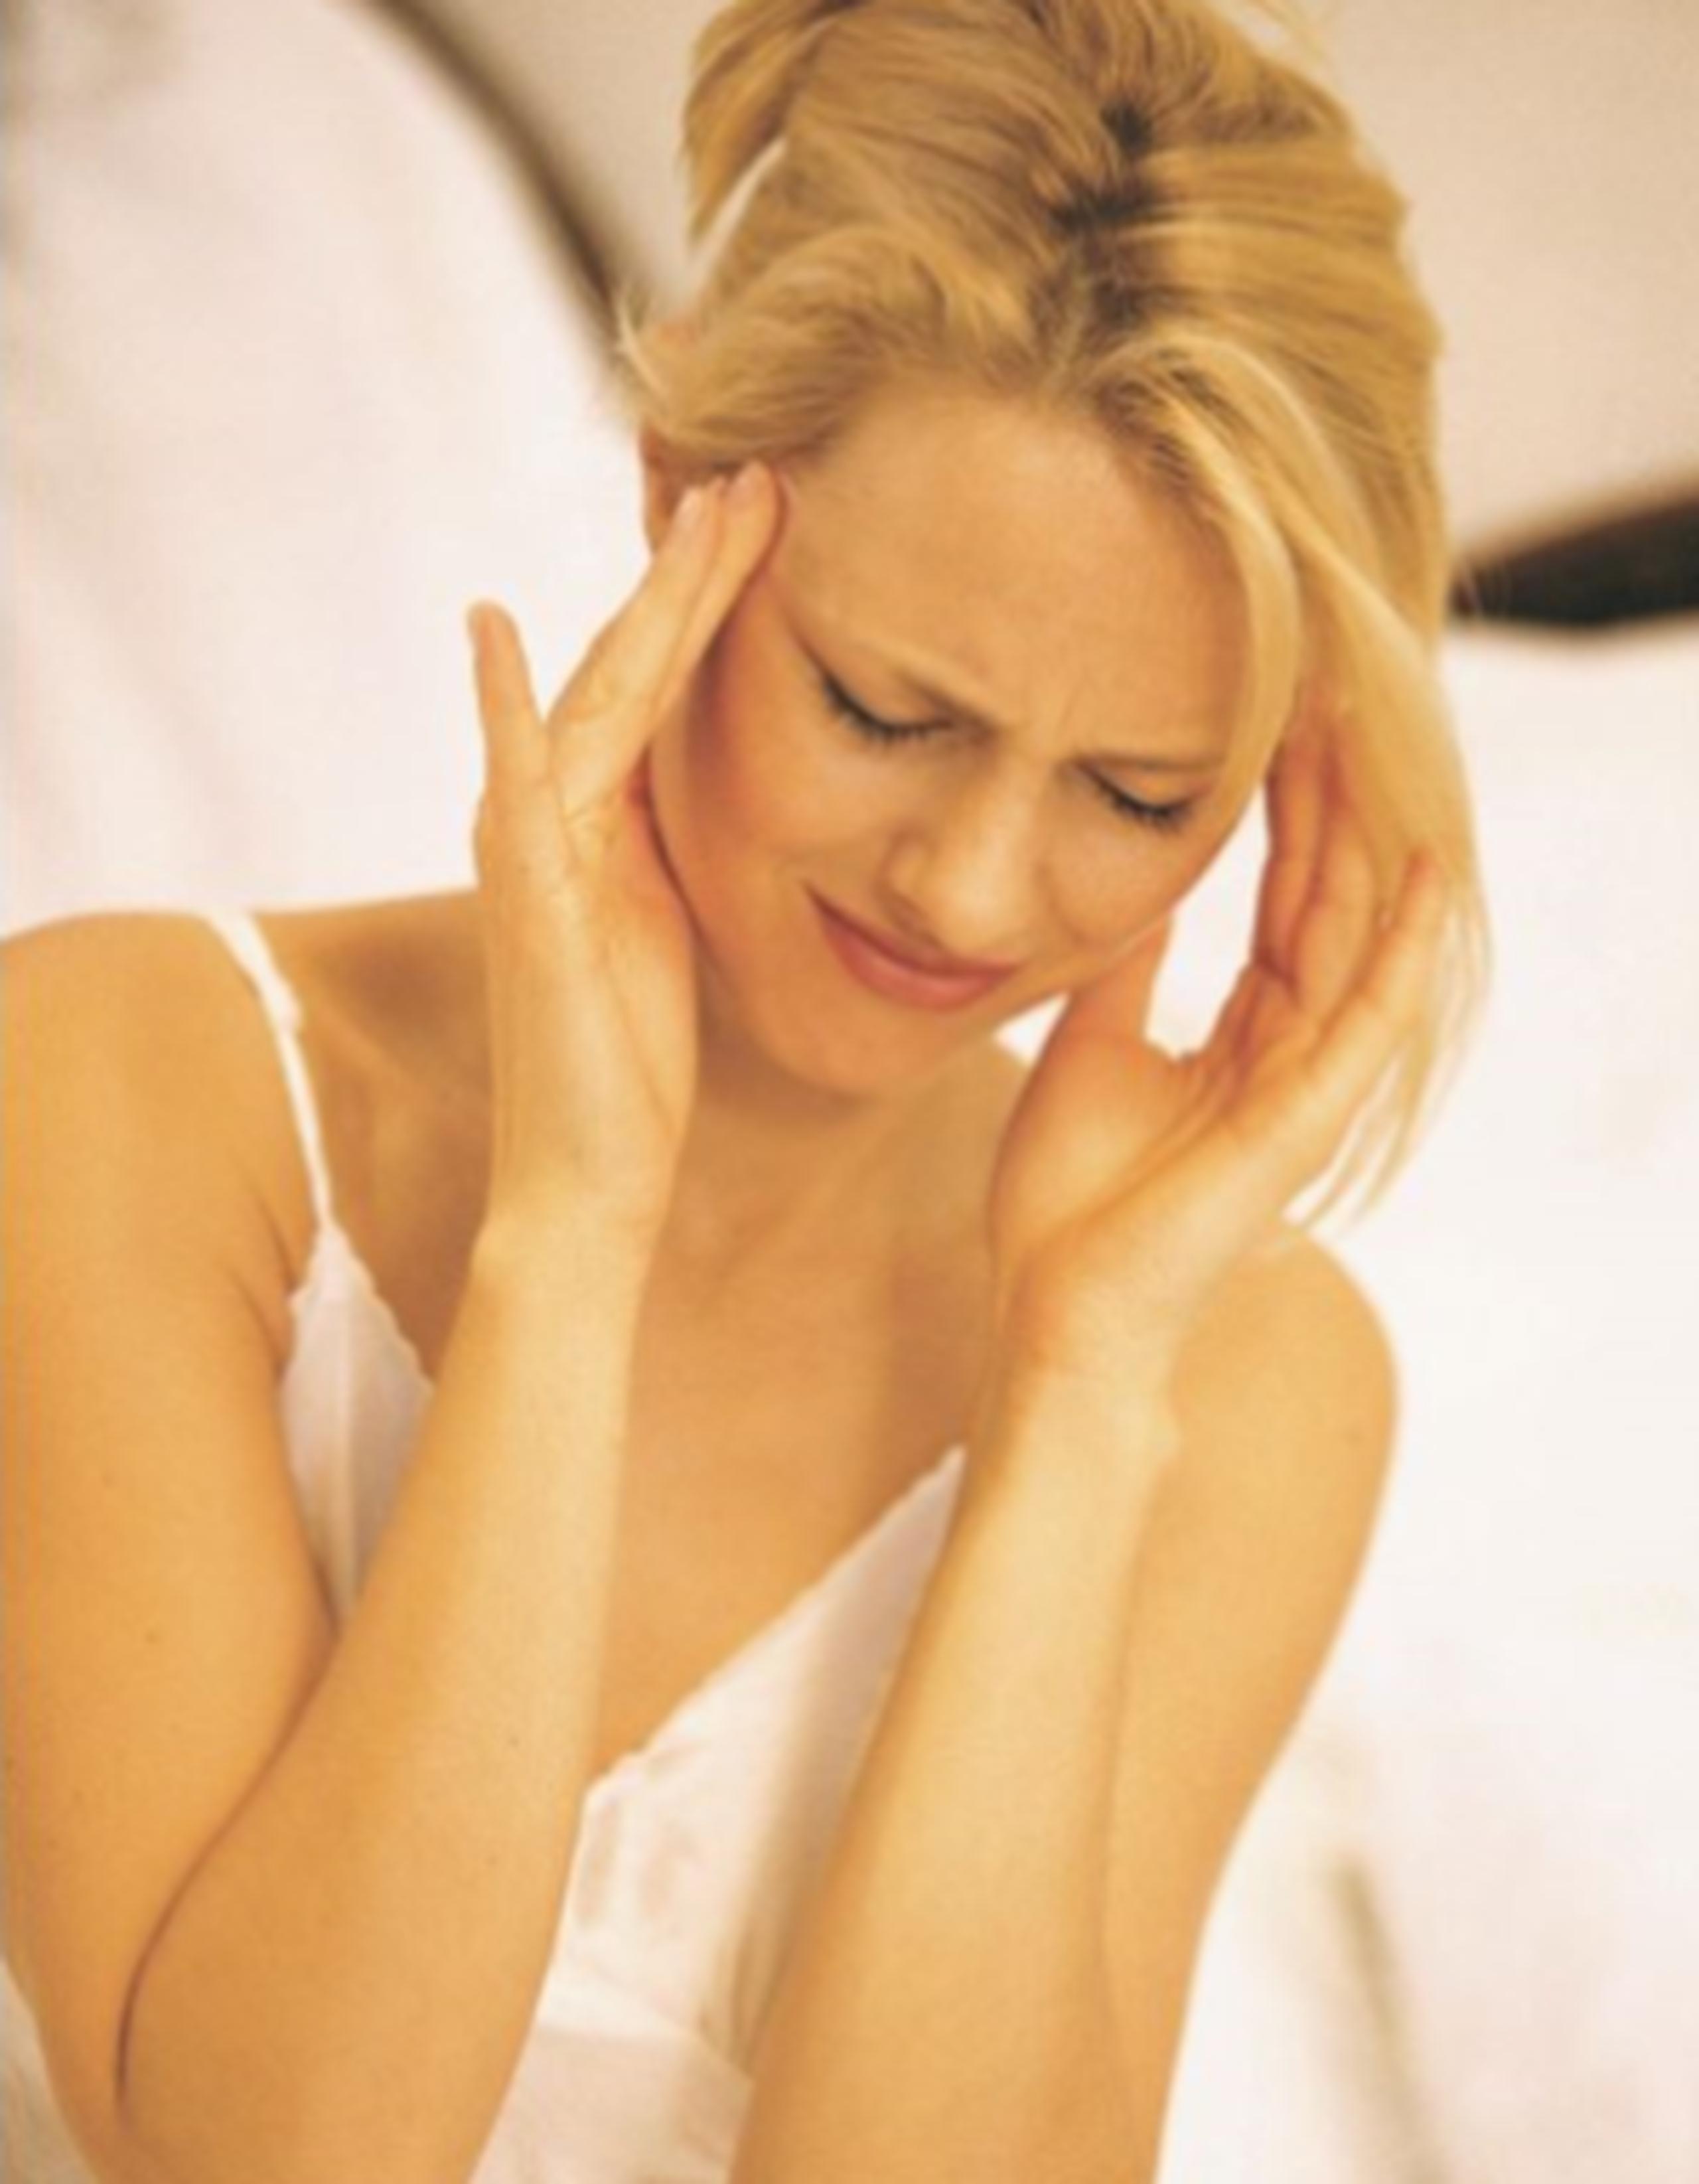 Los dolores de cabezas consistentes pueden ser uno de los síntomas. (Archivo)